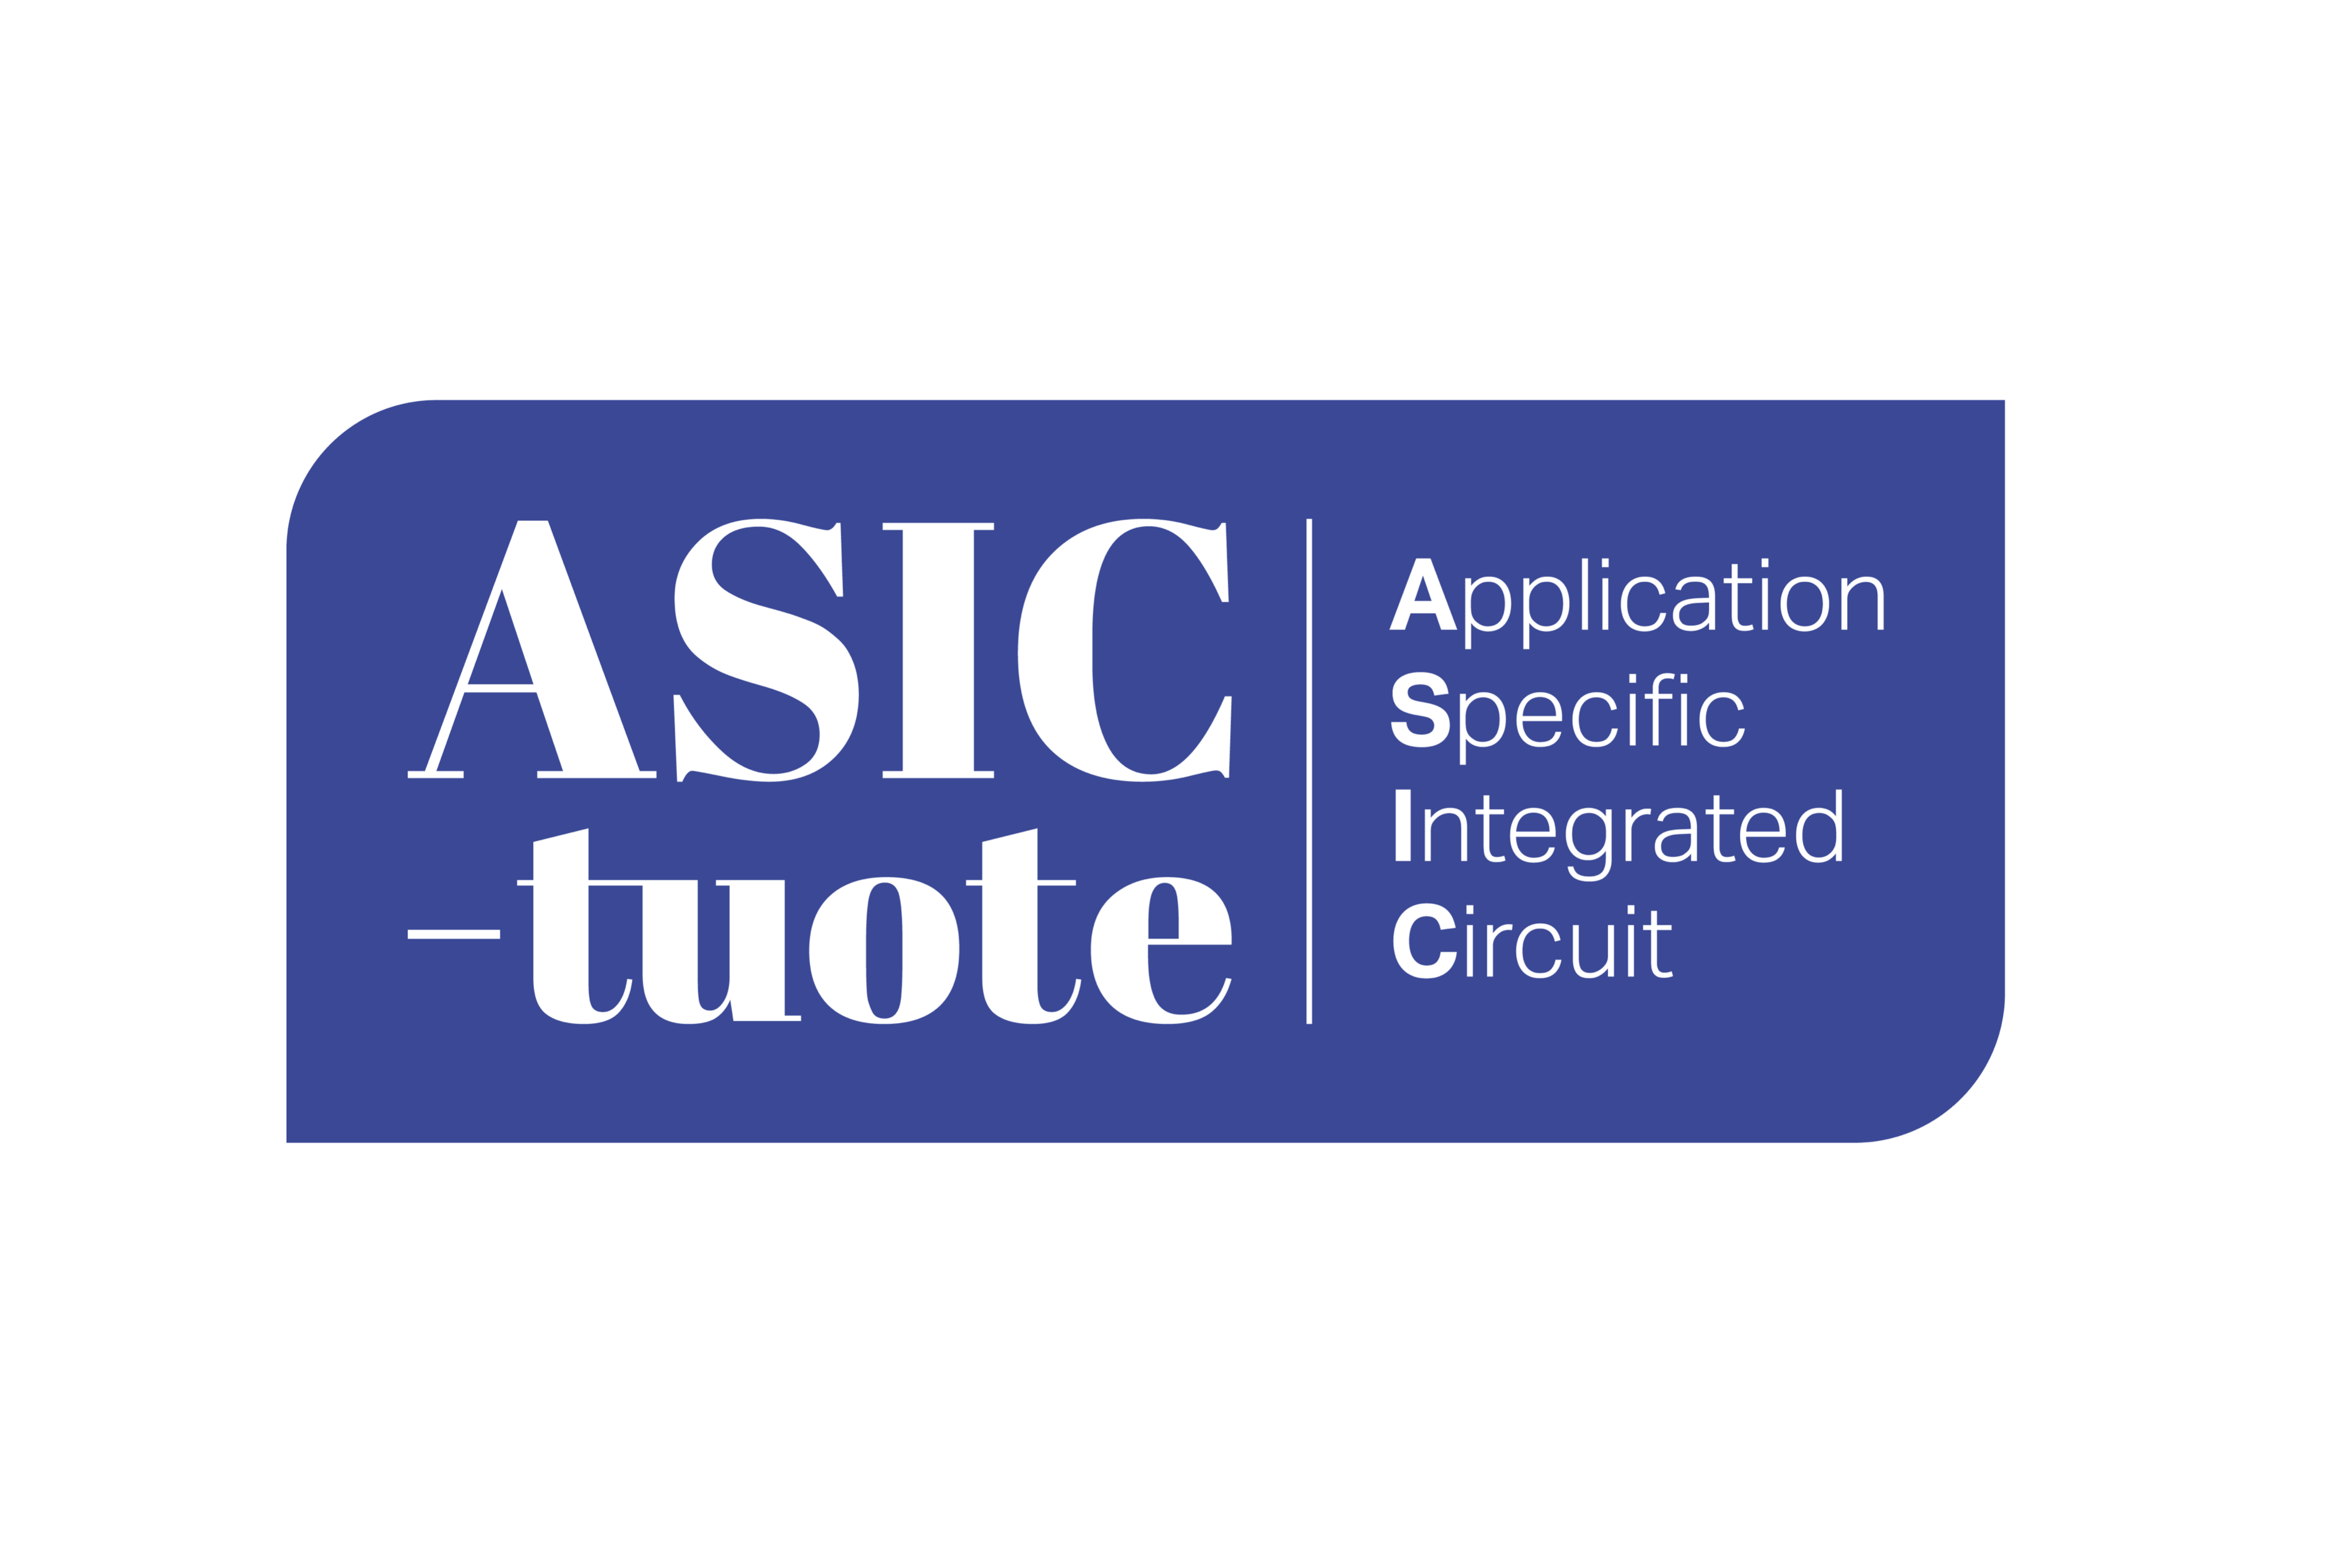 Asic-logo